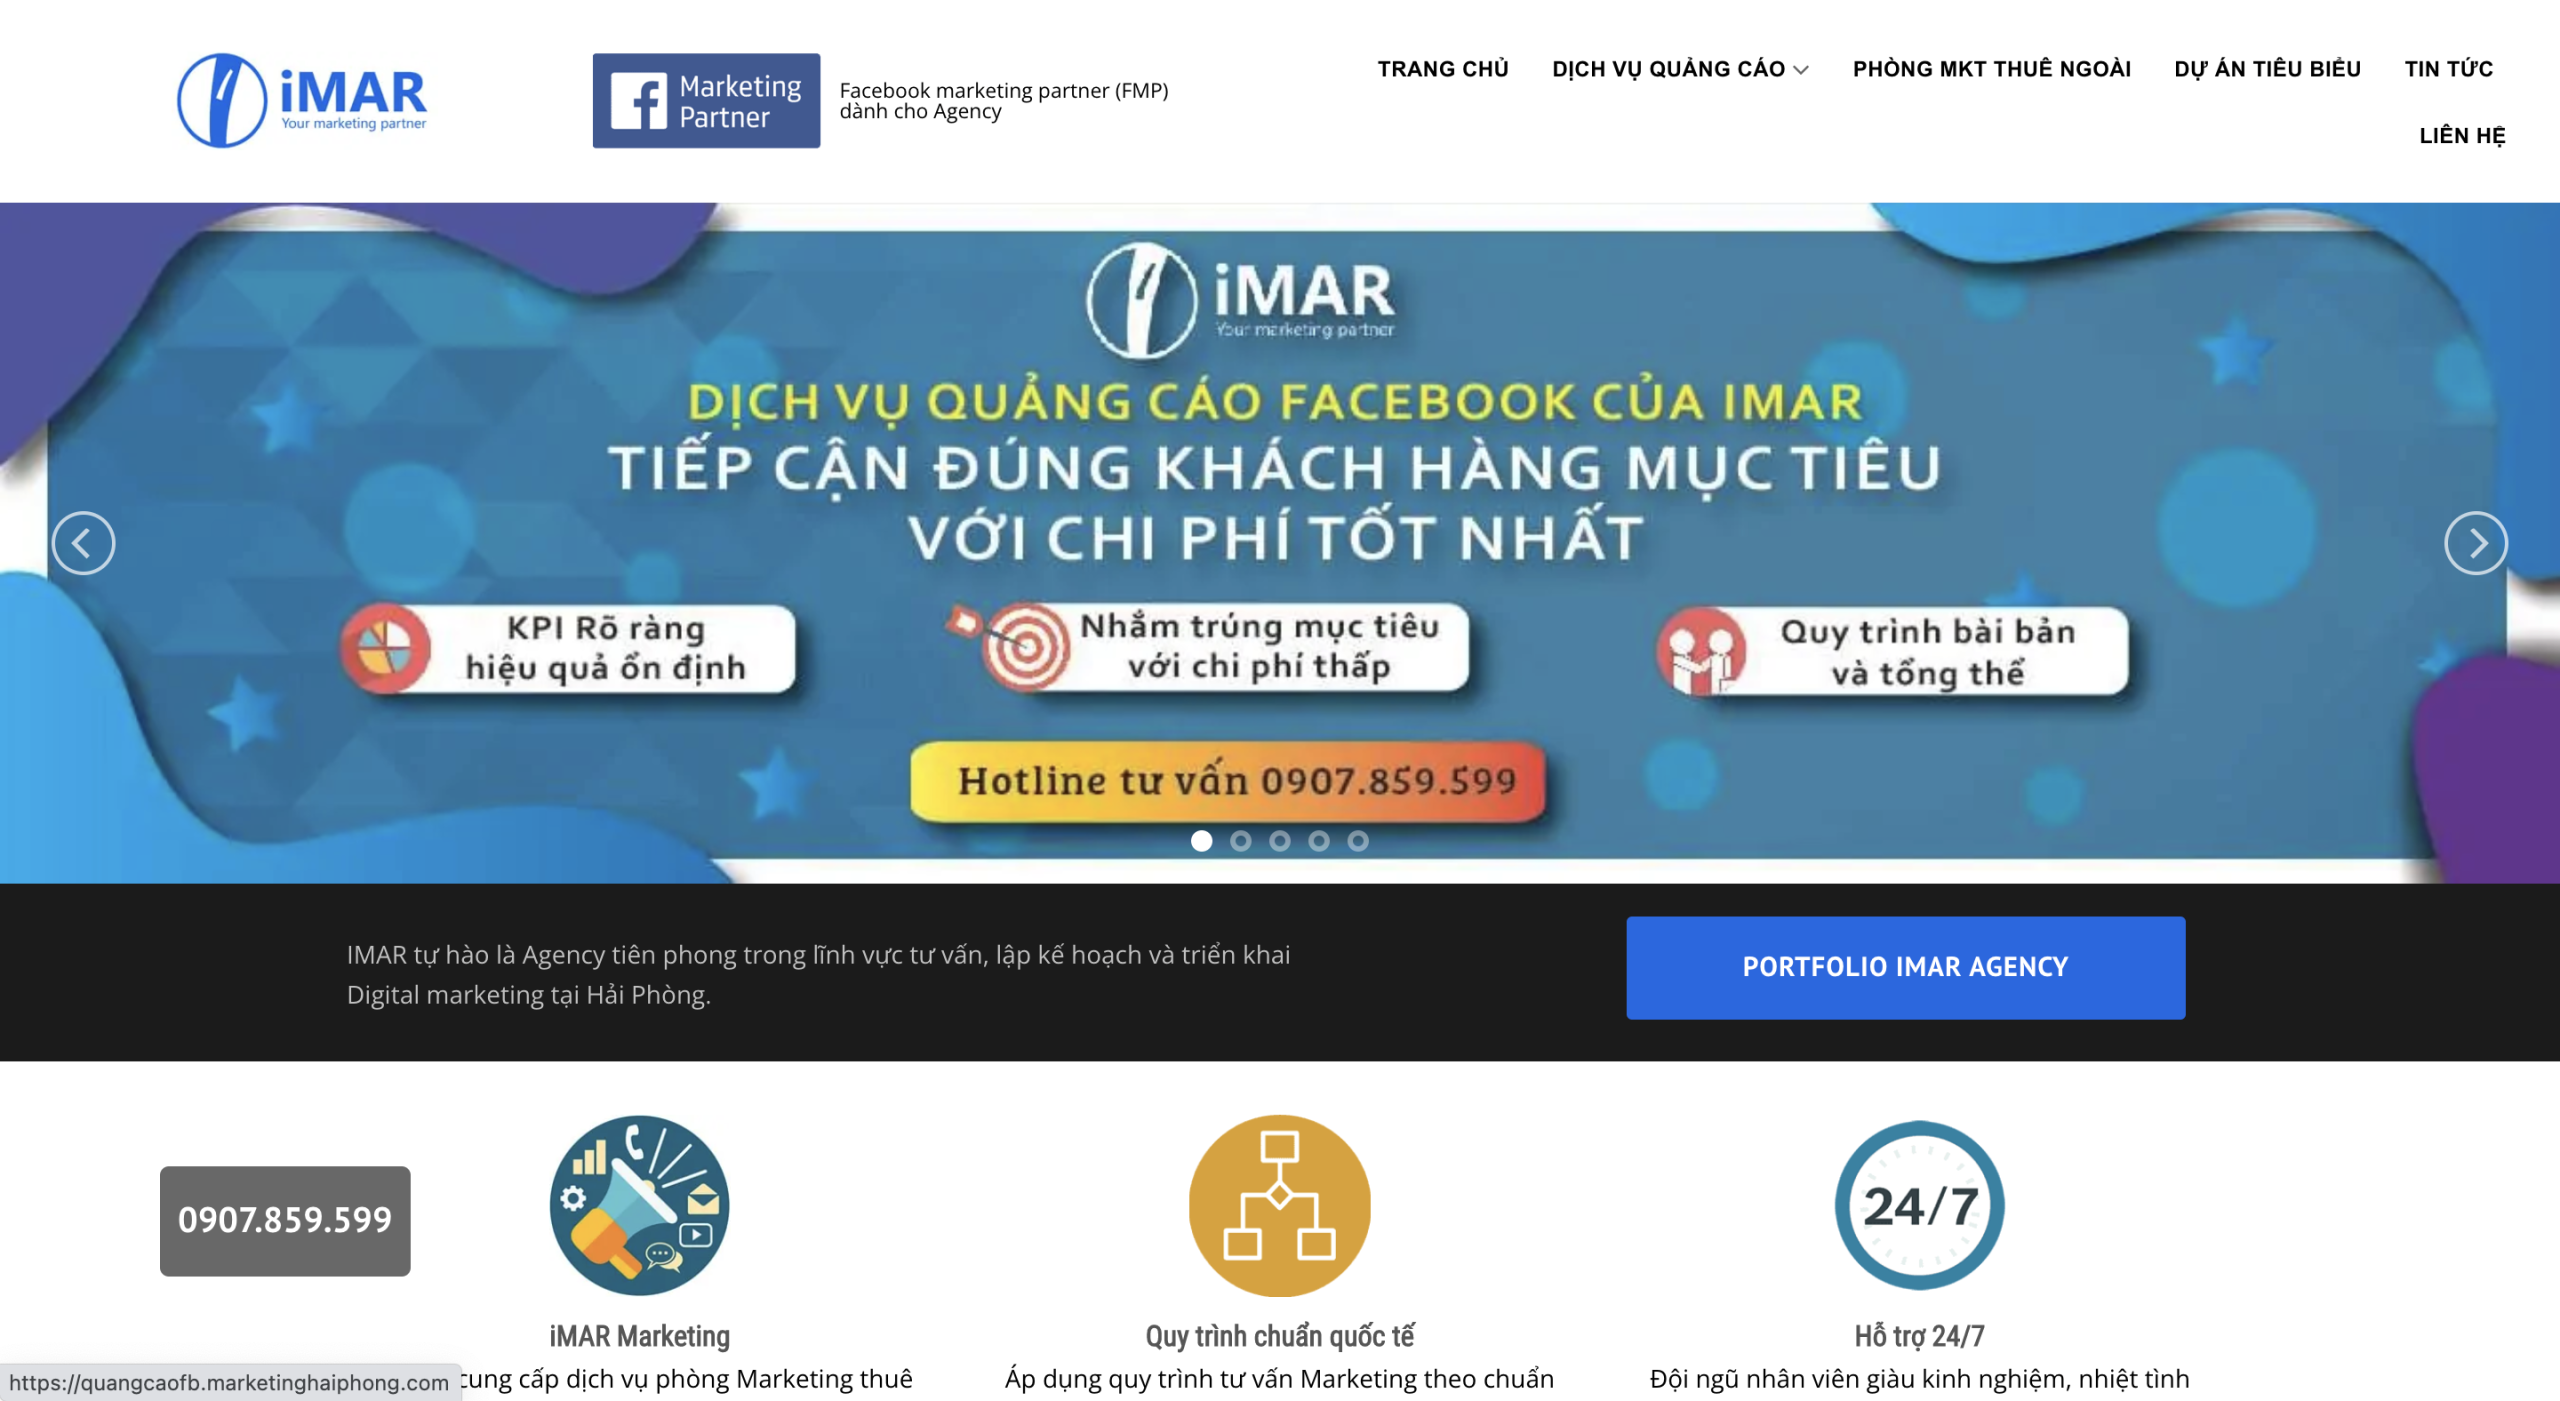 Công ty quảng cáo TikTok Imar